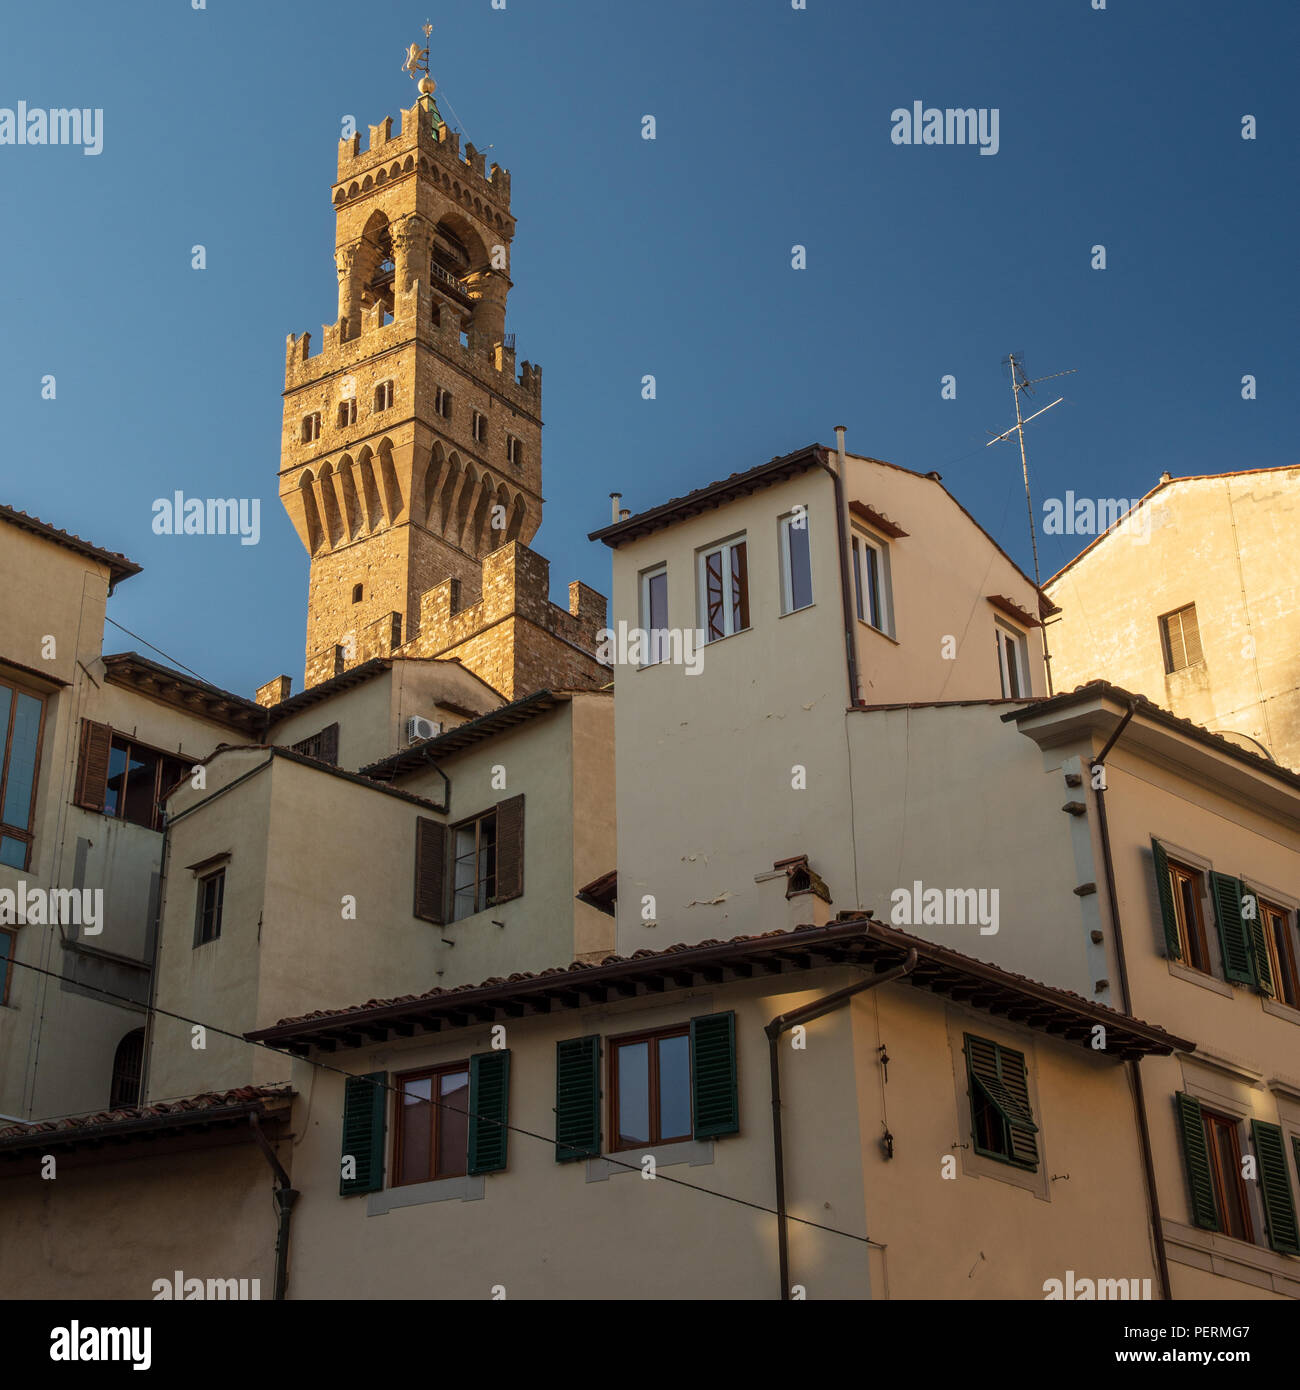 Florenz, Italien - 23. März 2018: Der Turm des Palazzo Vecchio steigt über die traditionellen Häuser von Florenz. Stockfoto